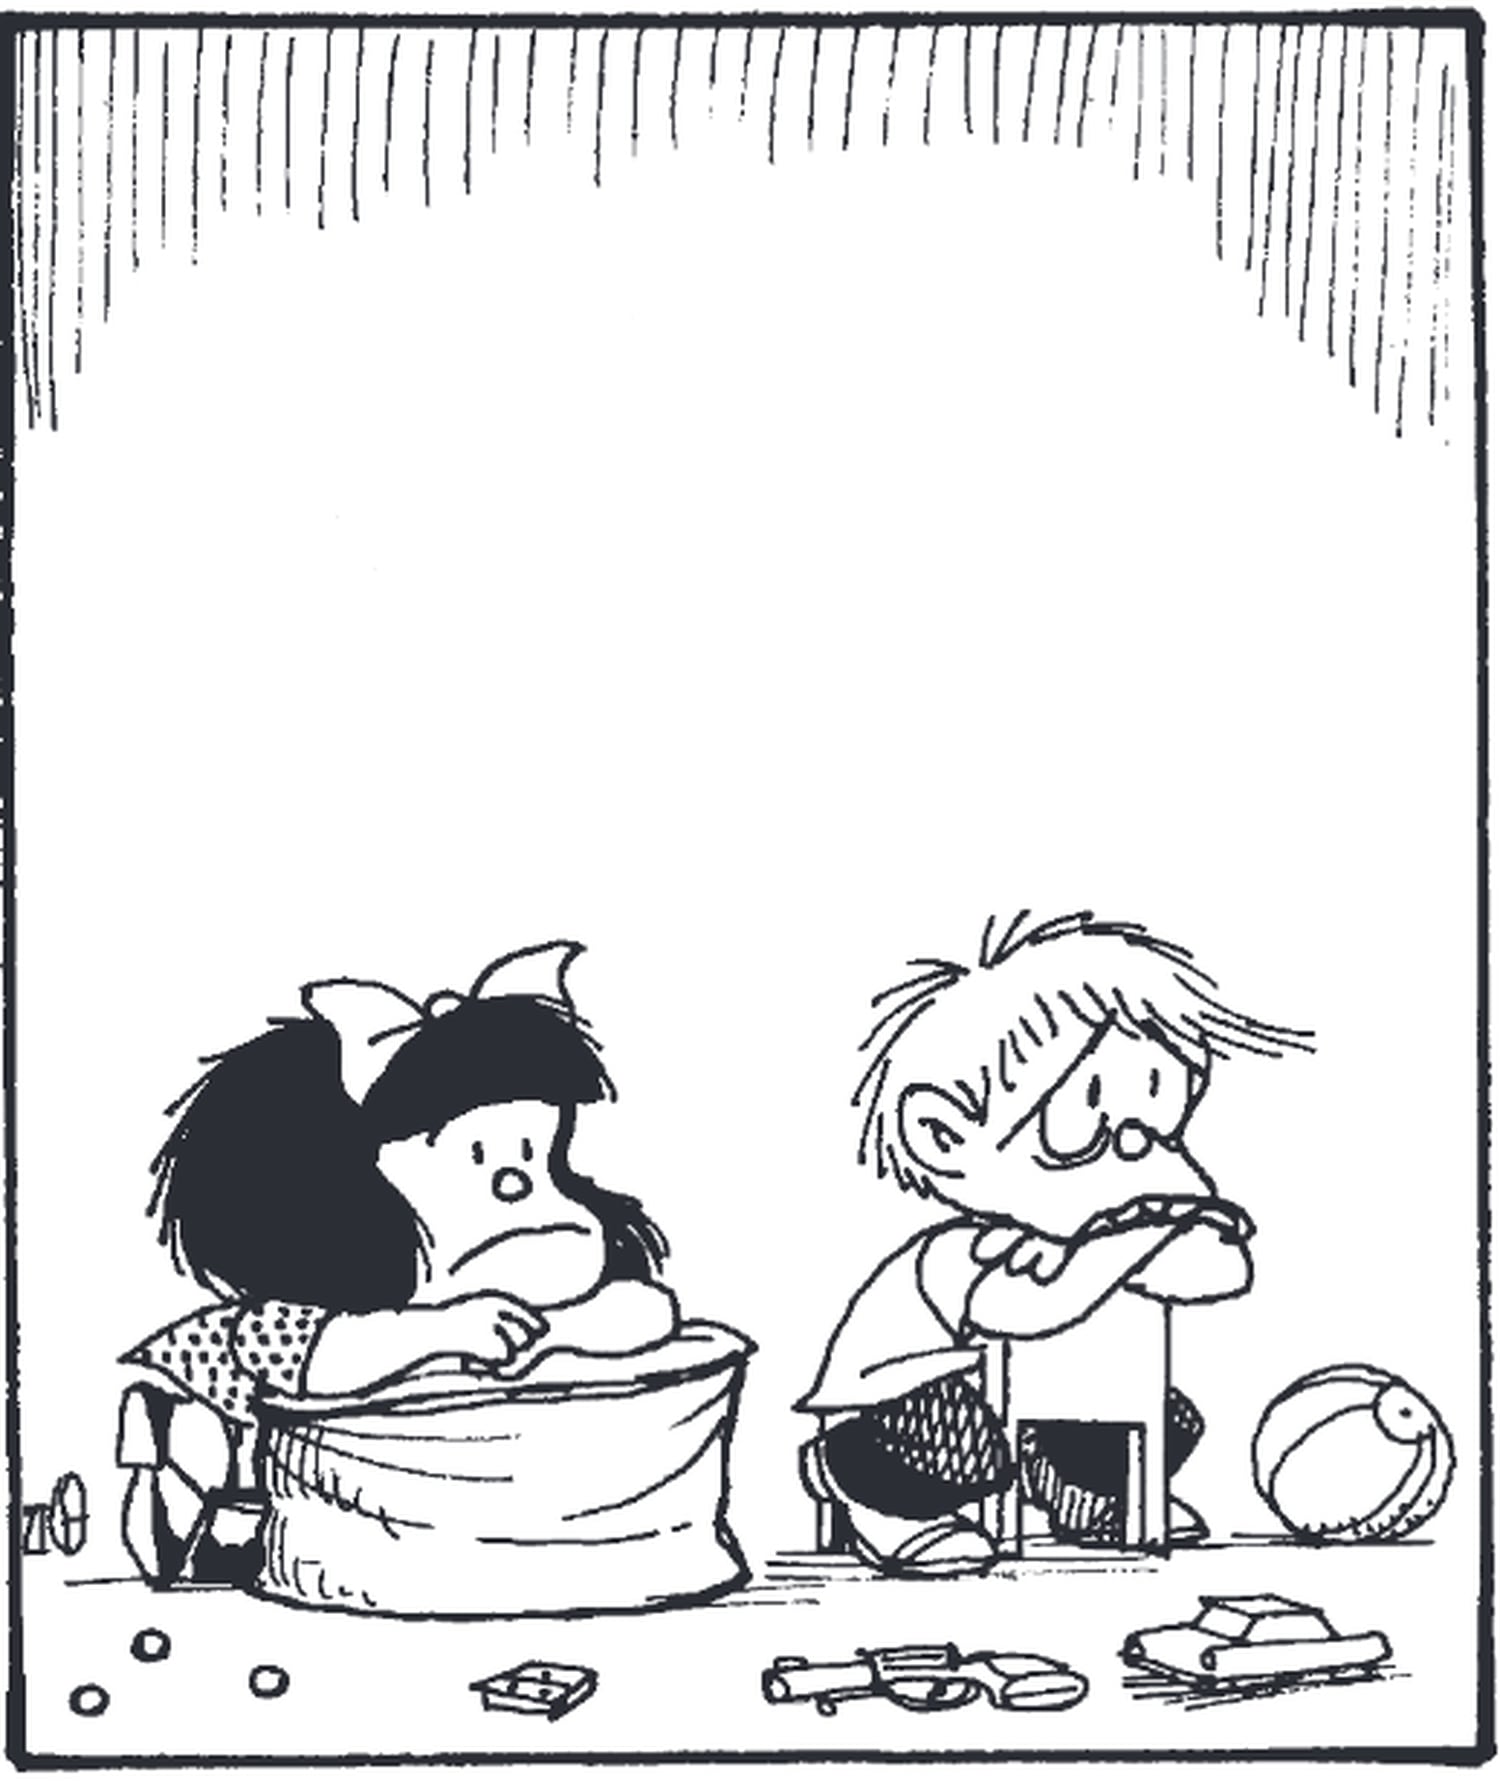 Viñeta de Mafalda y Felipe de 'El amor según Mafalda', de Quino, publicado en Lumen Gráfica.